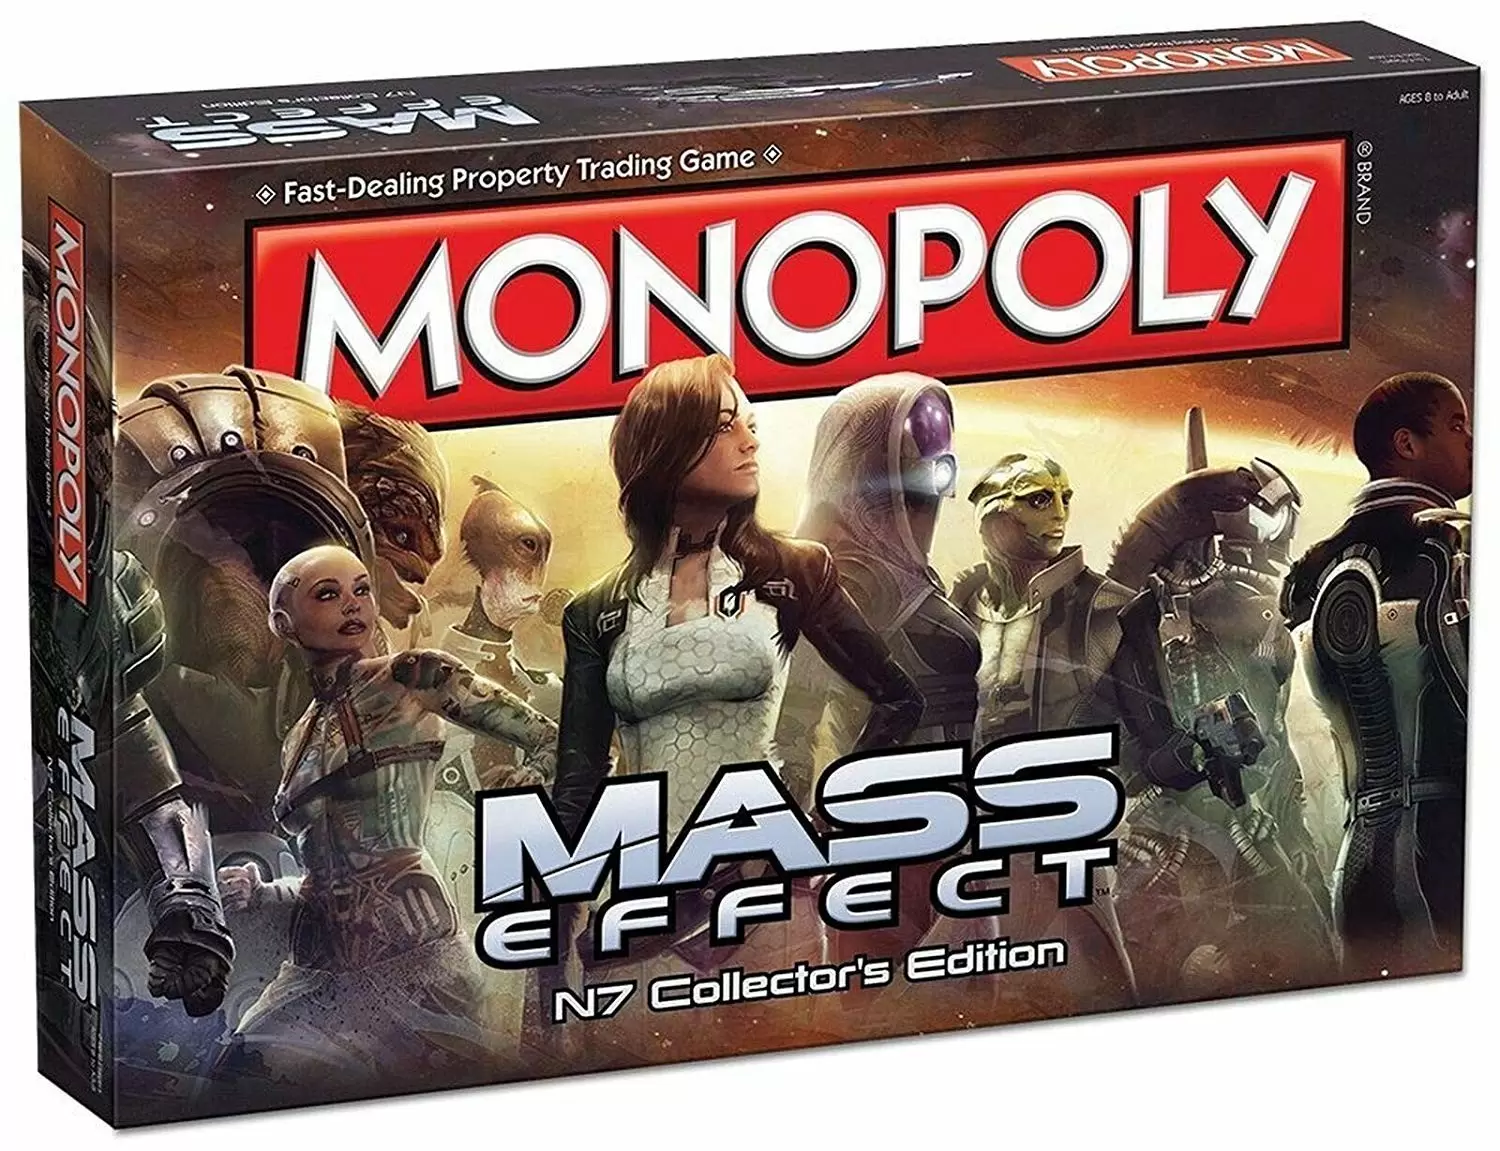 Monopoly Jeux vidéo - Monopoly - Mass Effect Edition